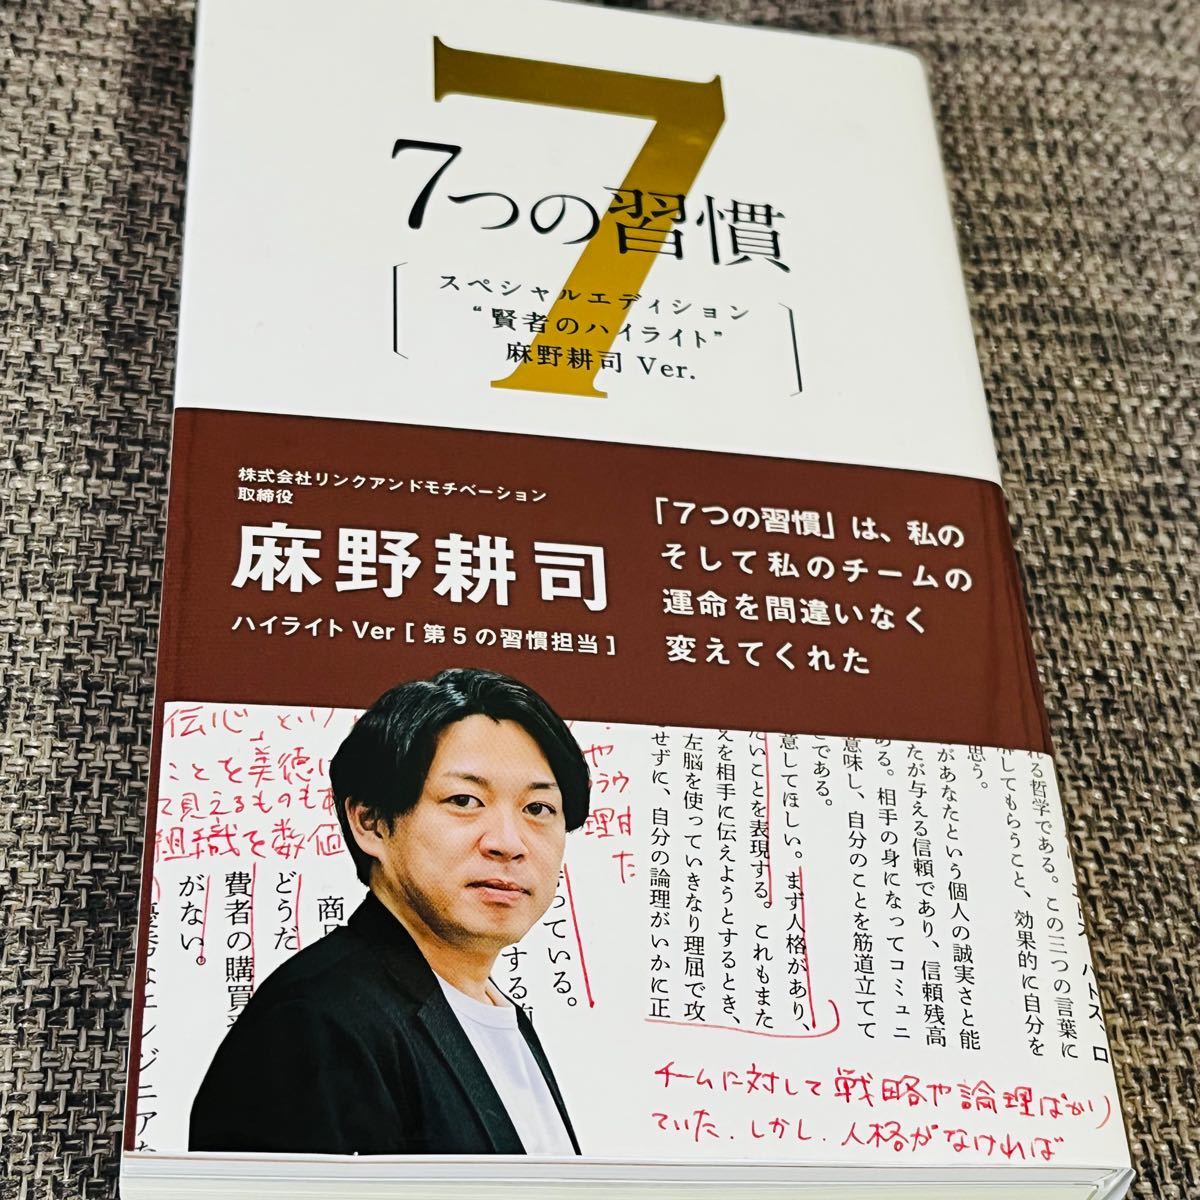 『7つの習慣』スペシャルエディション 麻野耕司ver